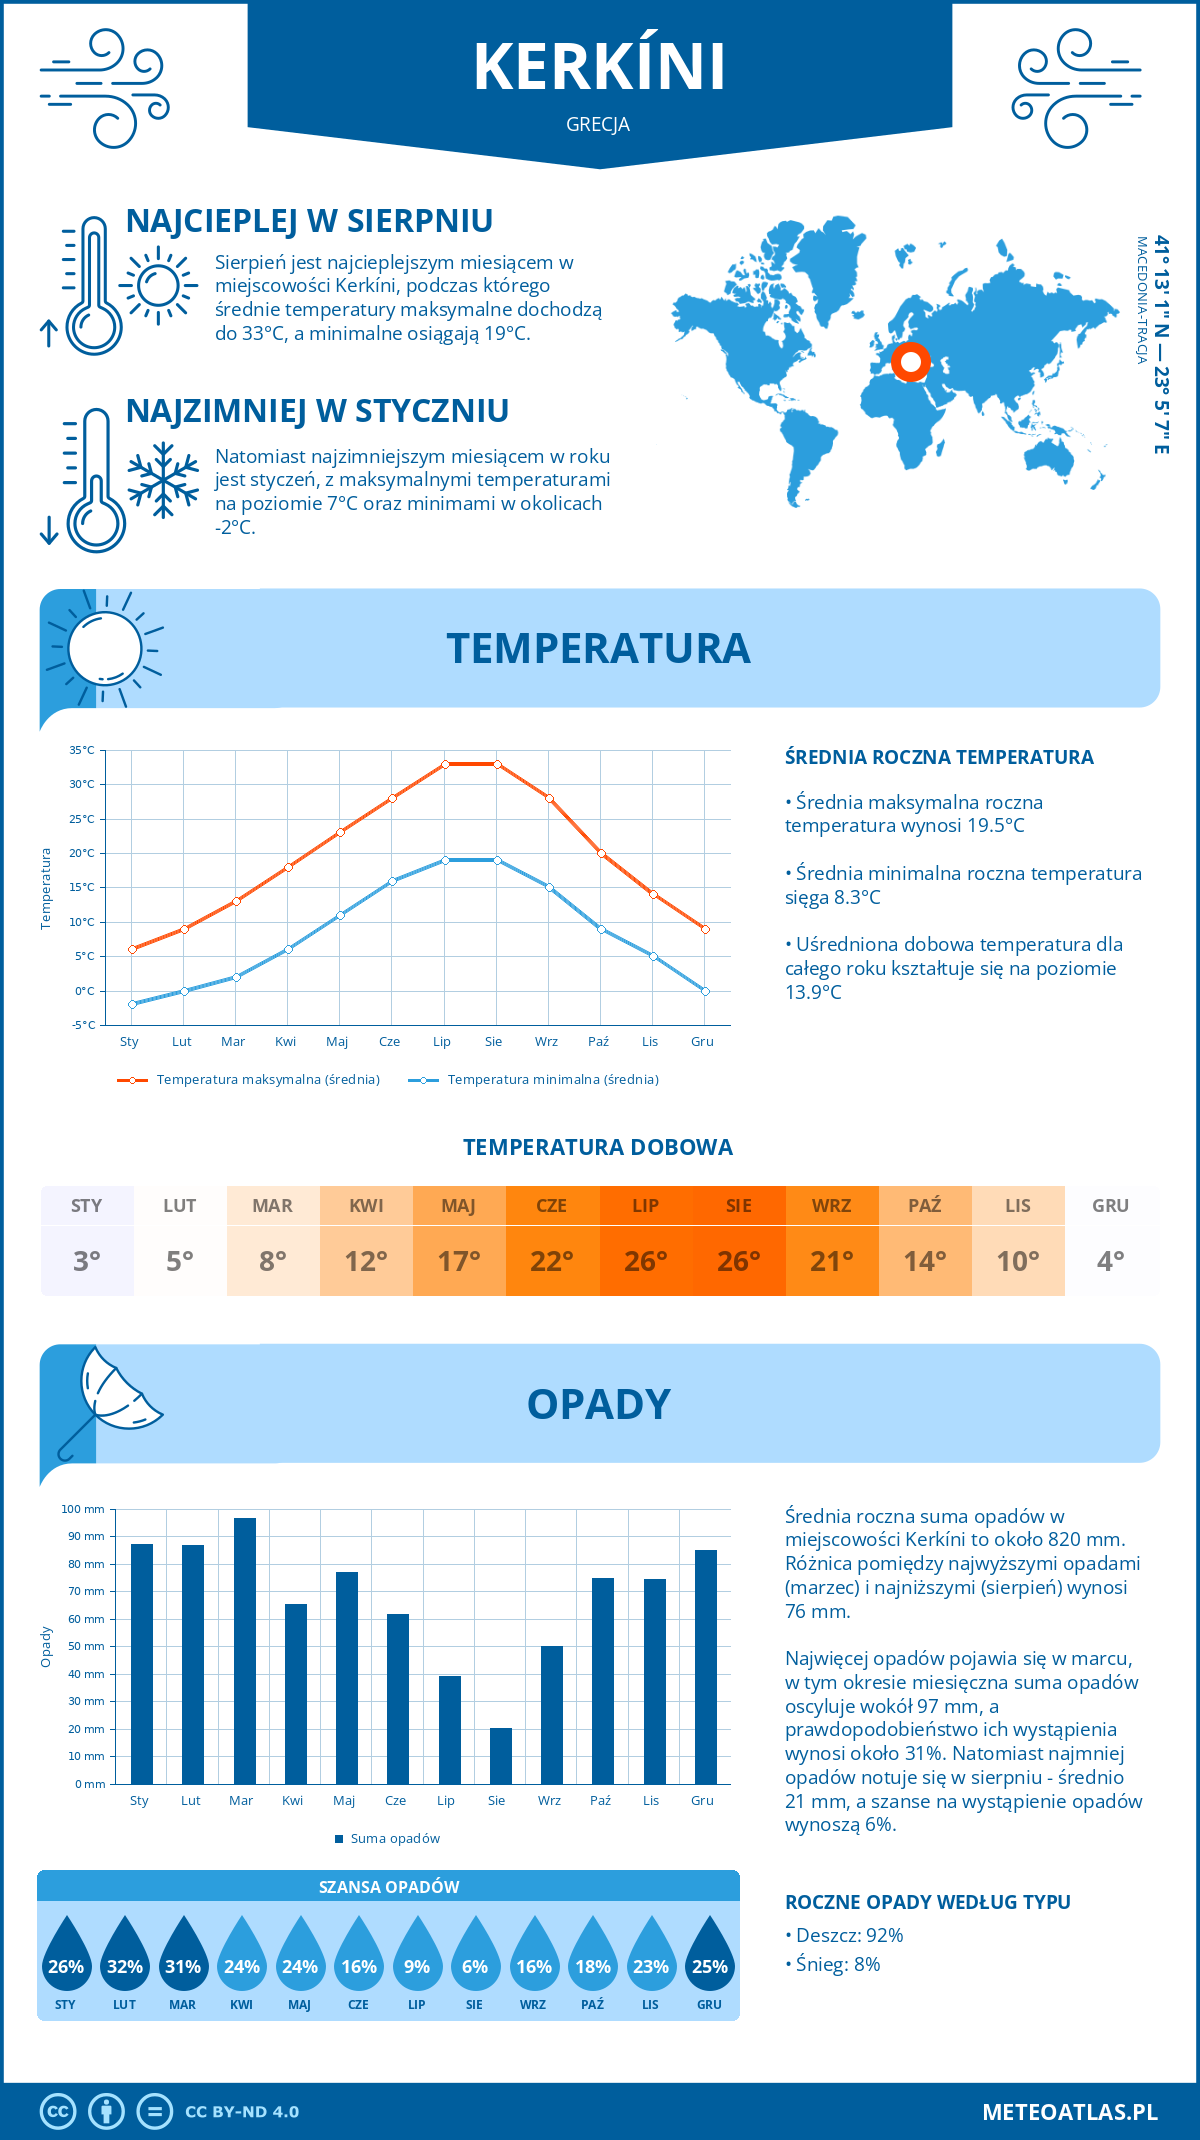 Pogoda Kierkini (Grecja). Temperatura oraz opady.